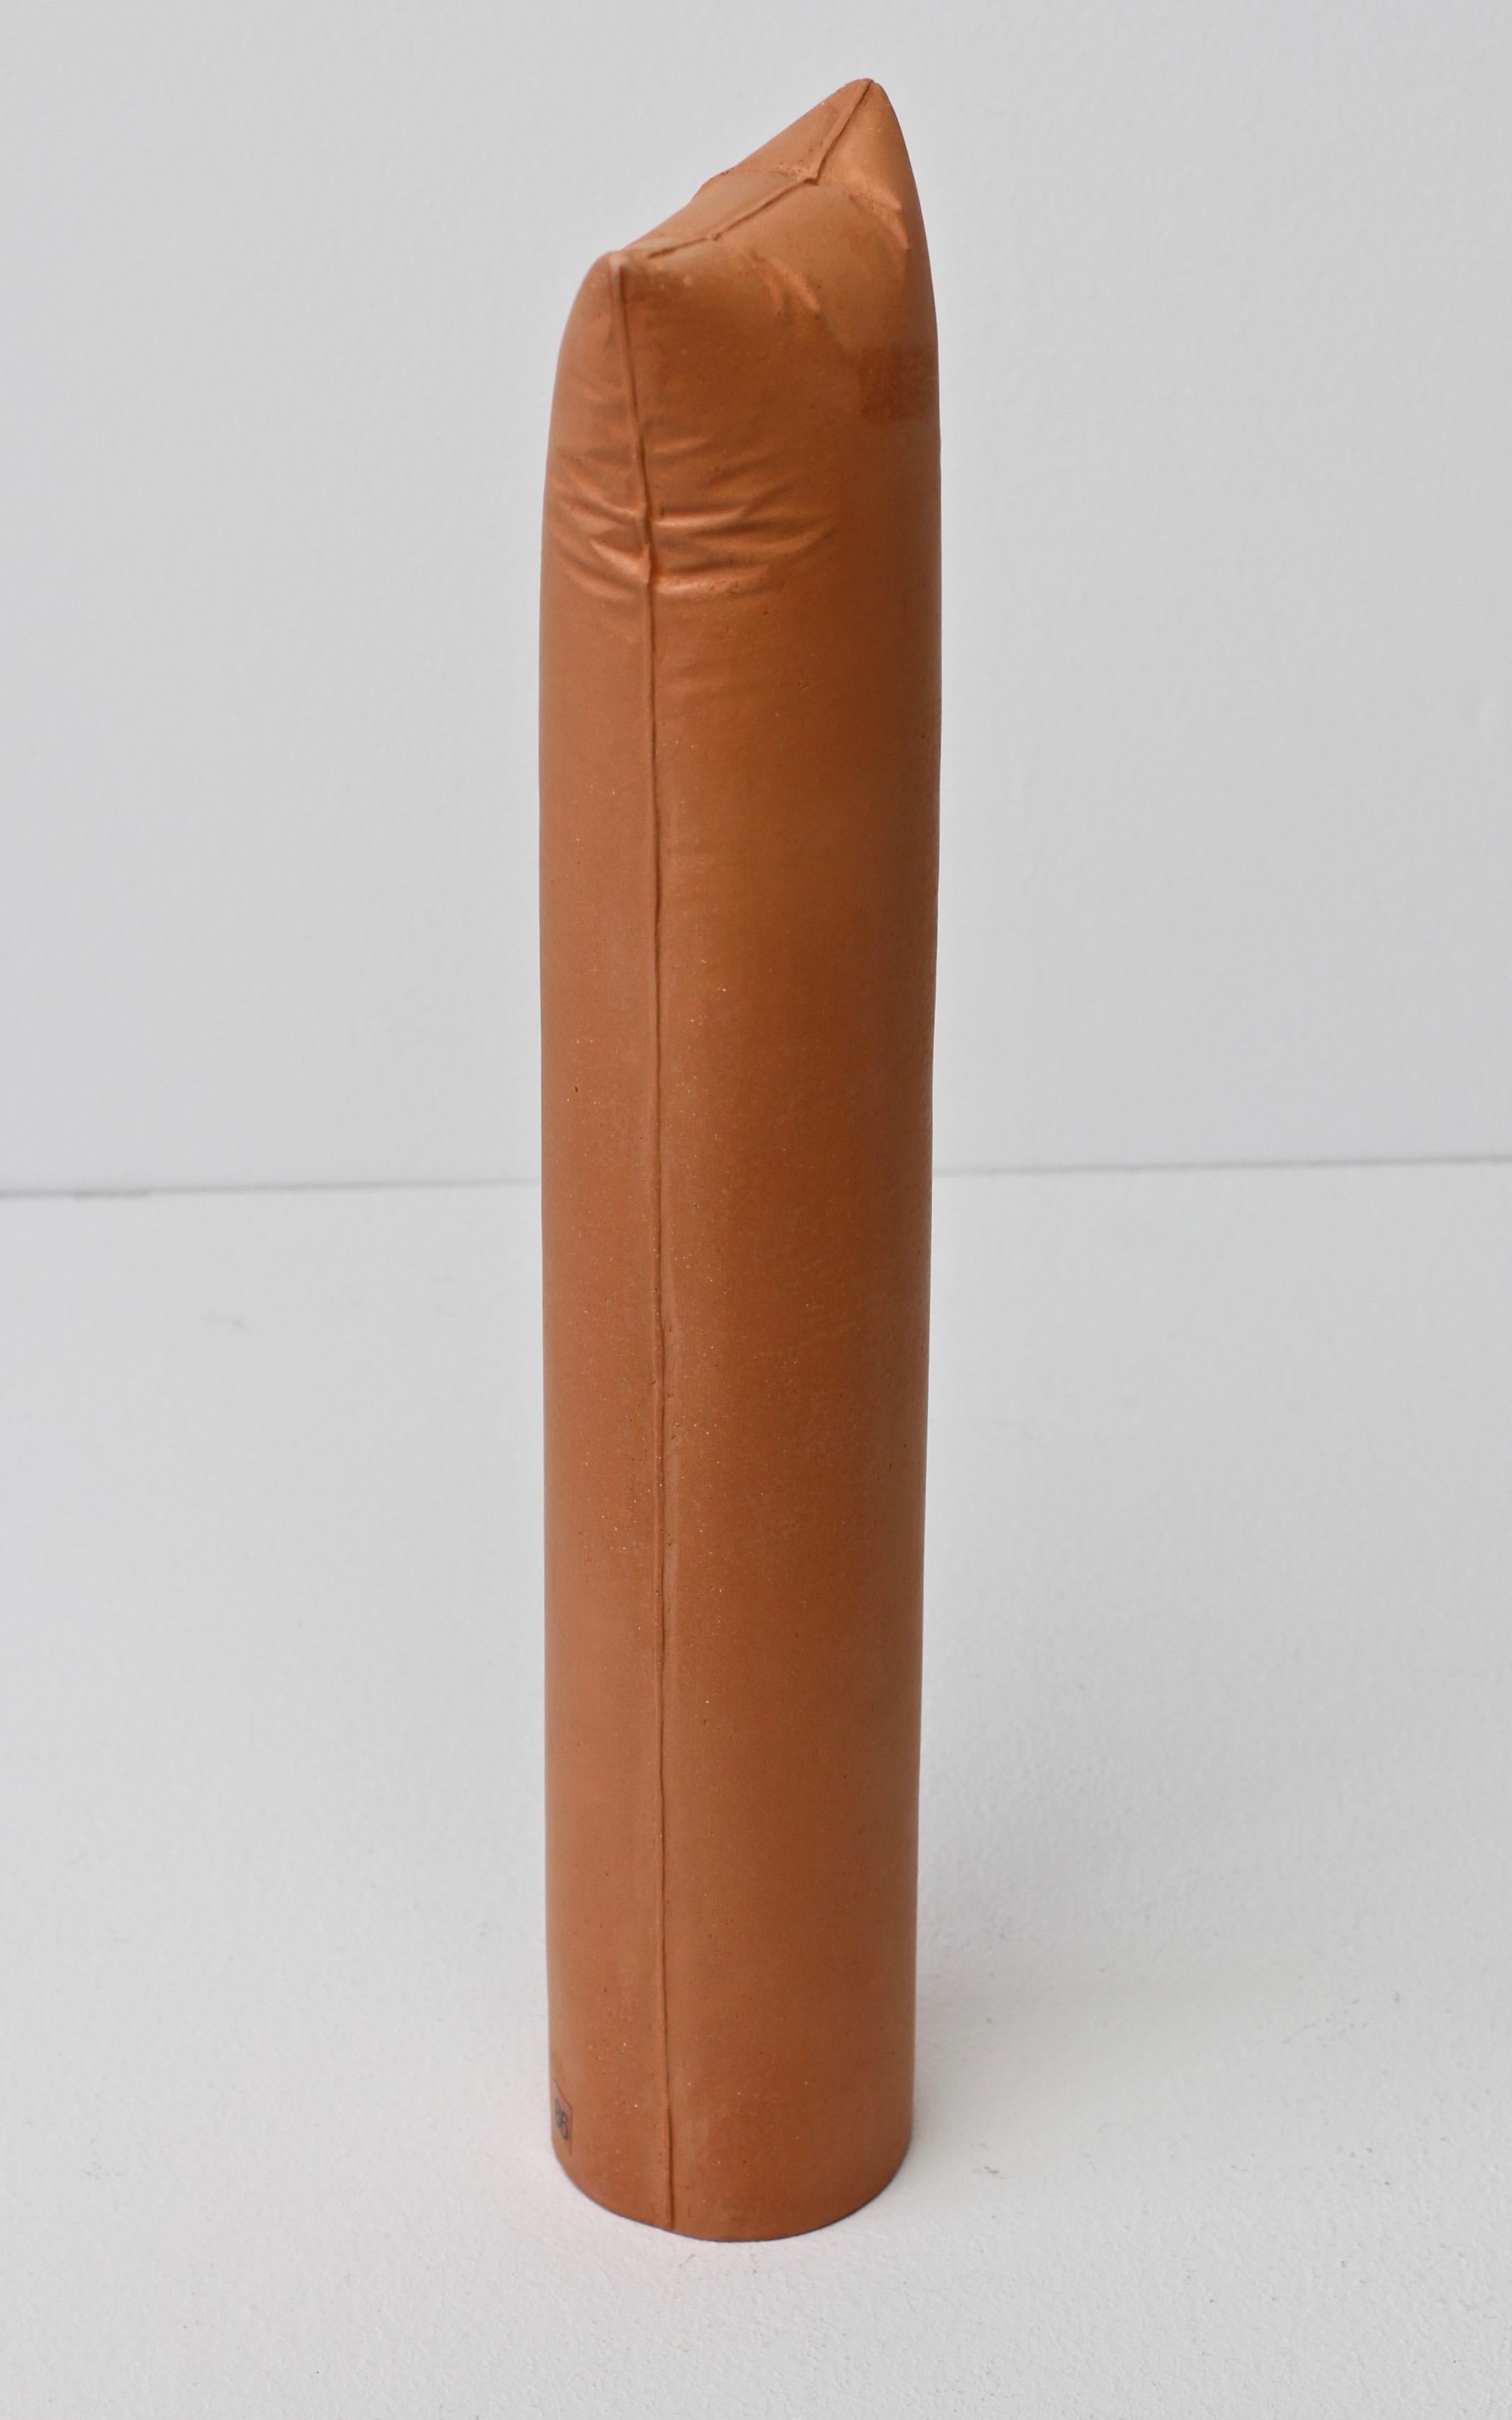 Embossed Gabriele Puetz Pillow Pillar 'Nichts' Vintage German Art Pottery Sculpture # 5/7 For Sale